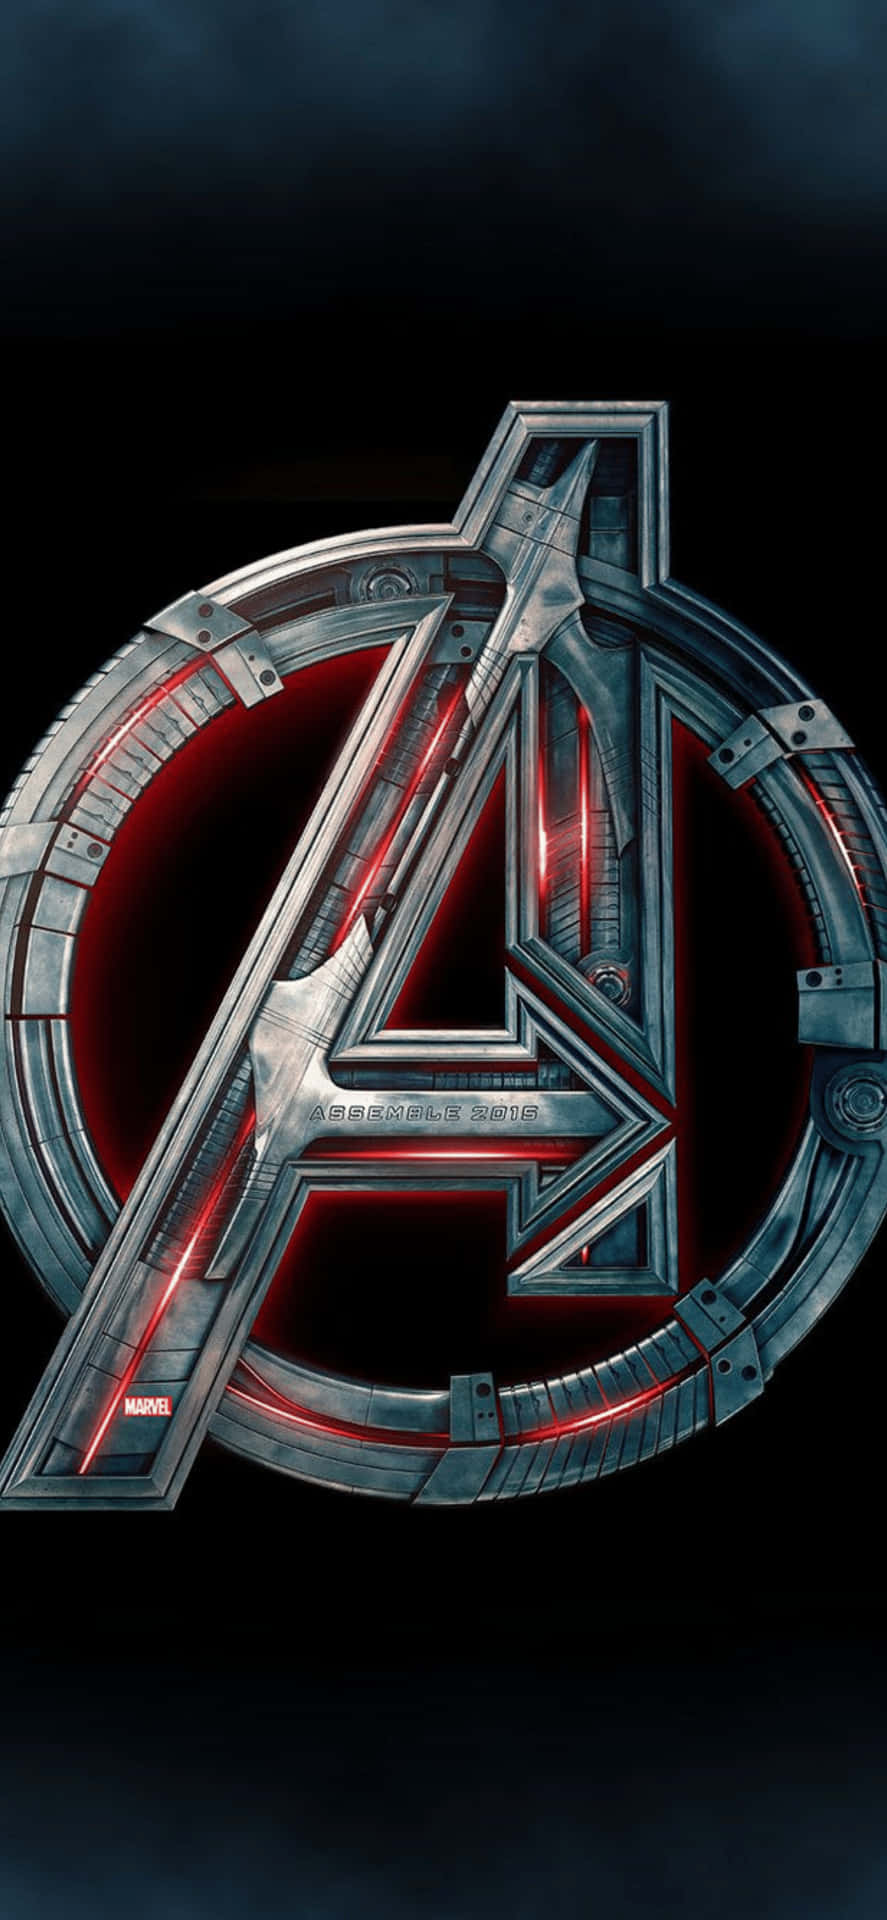 Iphonexs Max Bakgrund Med Marvel Avengers-logotypen.